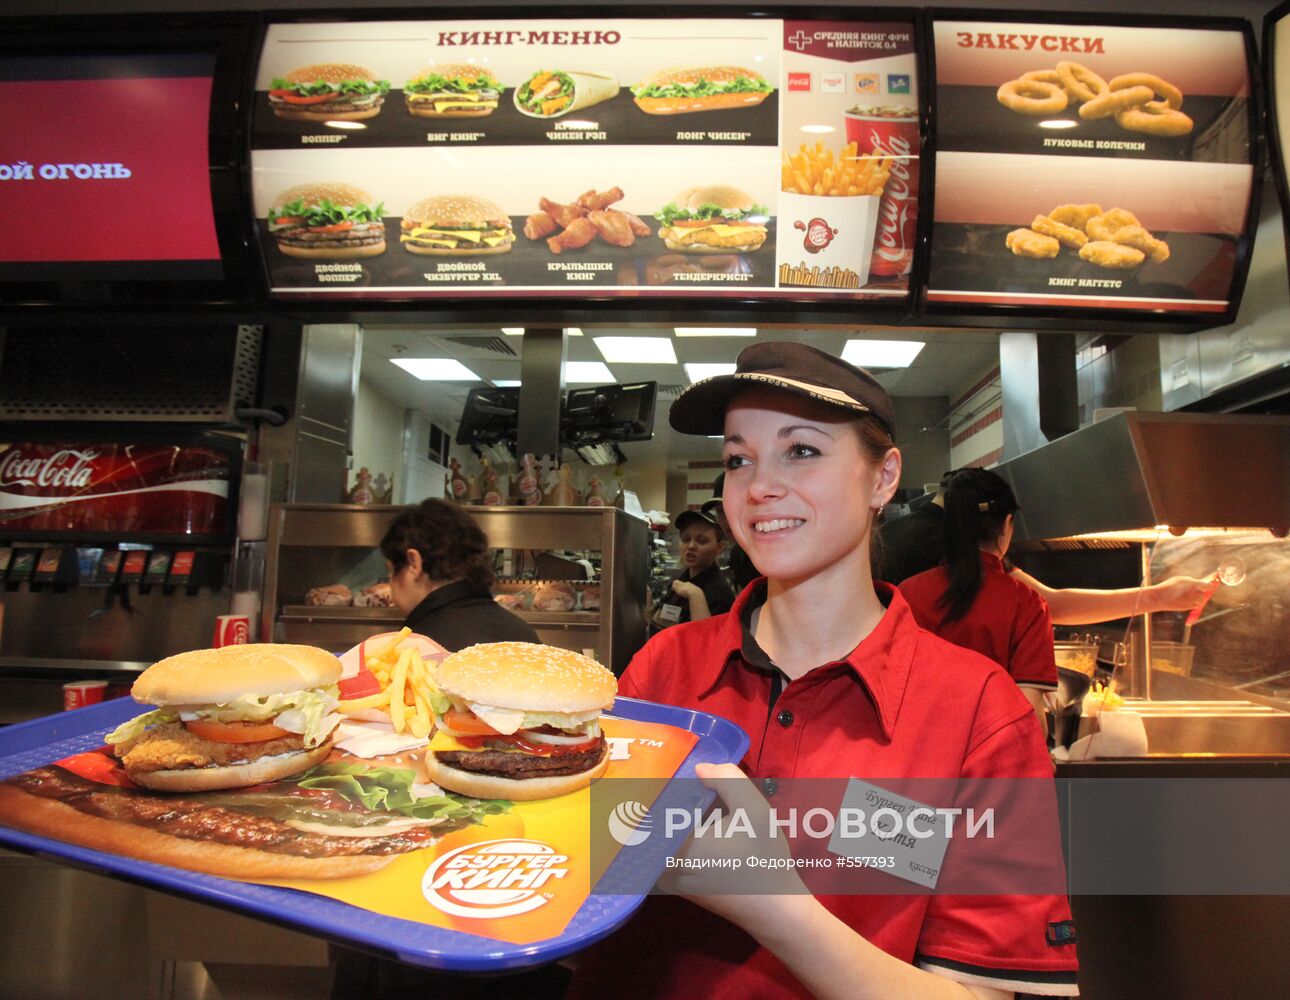 Один из первых ресторанов сети Burger King открылся в Москве